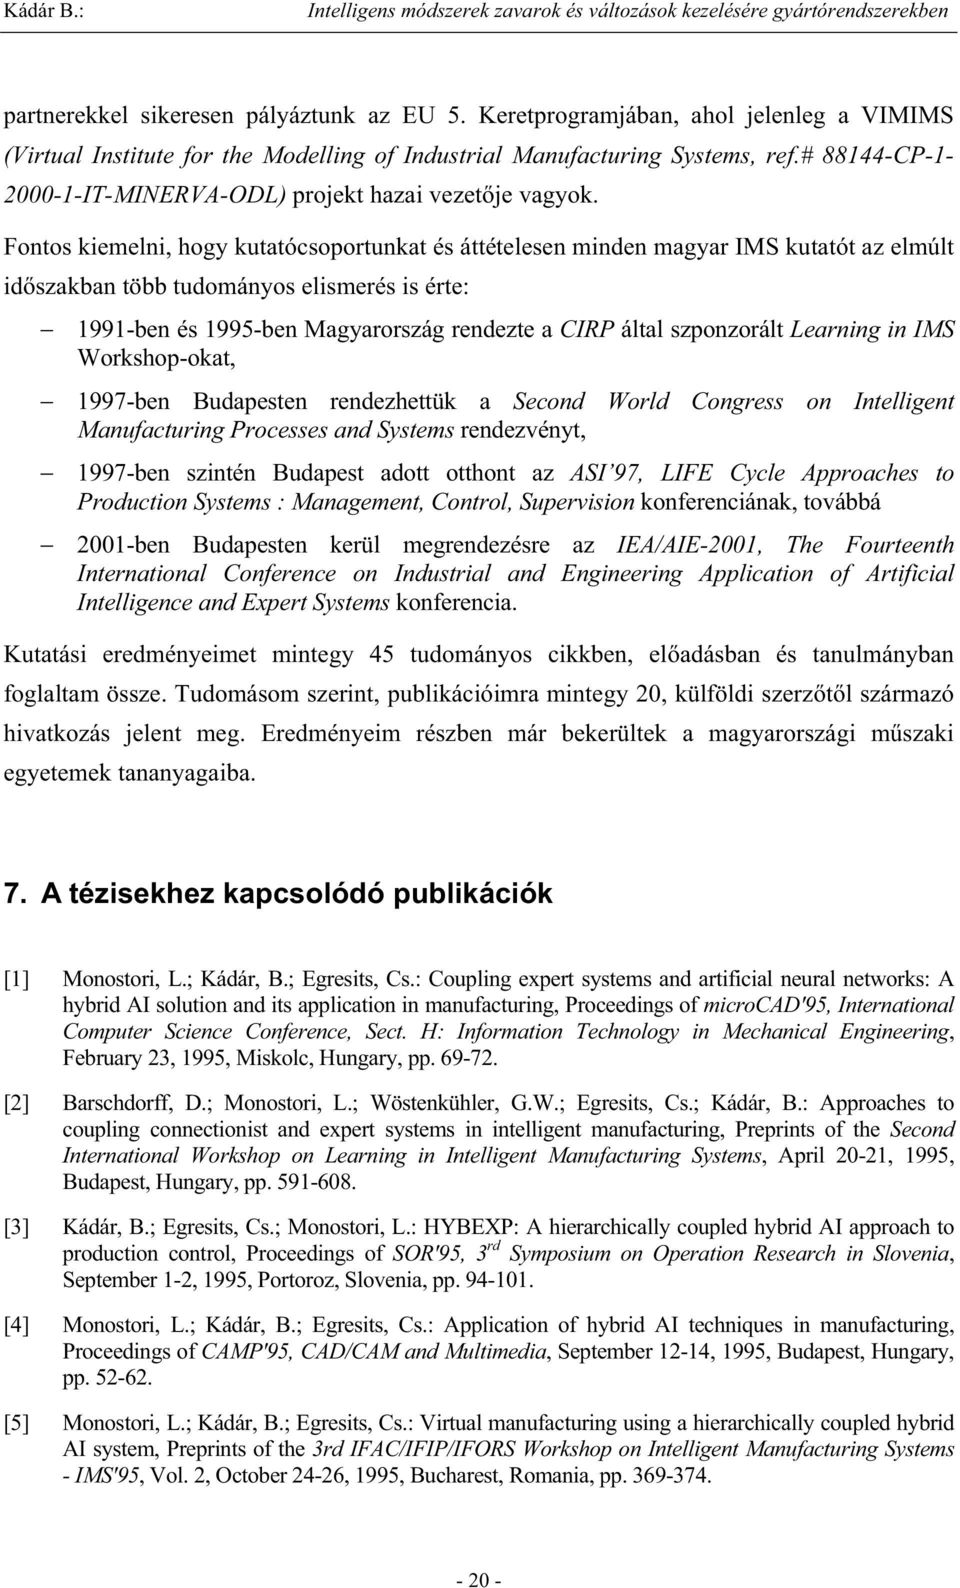 Fontos kiemelni, hogy kutatócsoportunkat és áttételesen minden magyar IMS kutatót az elmúlt id szakban több tudományos elismerés is érte: 1991-ben és 1995-ben Magyarország rendezte a CIRP által